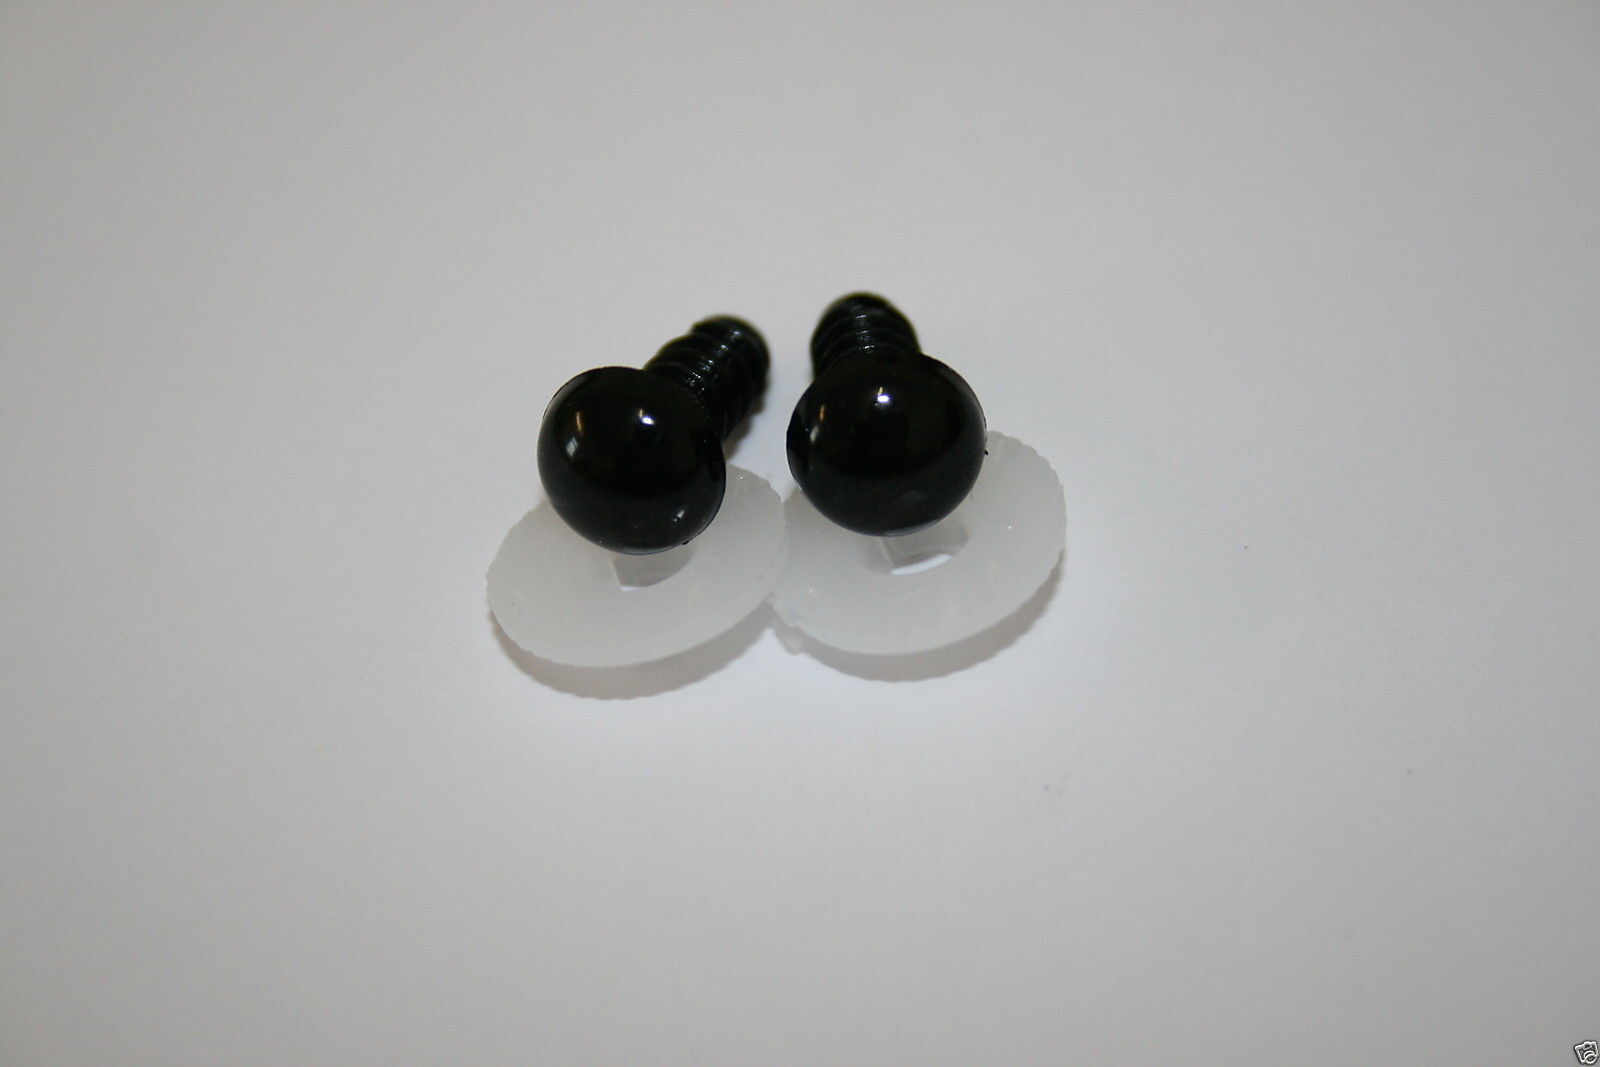 Crystal Plastic Safety Teddy Bear Eyes Inc Washers Soft Toy Making - Black 9mm Wysokiej jakości sprzedaż wysyłkowa